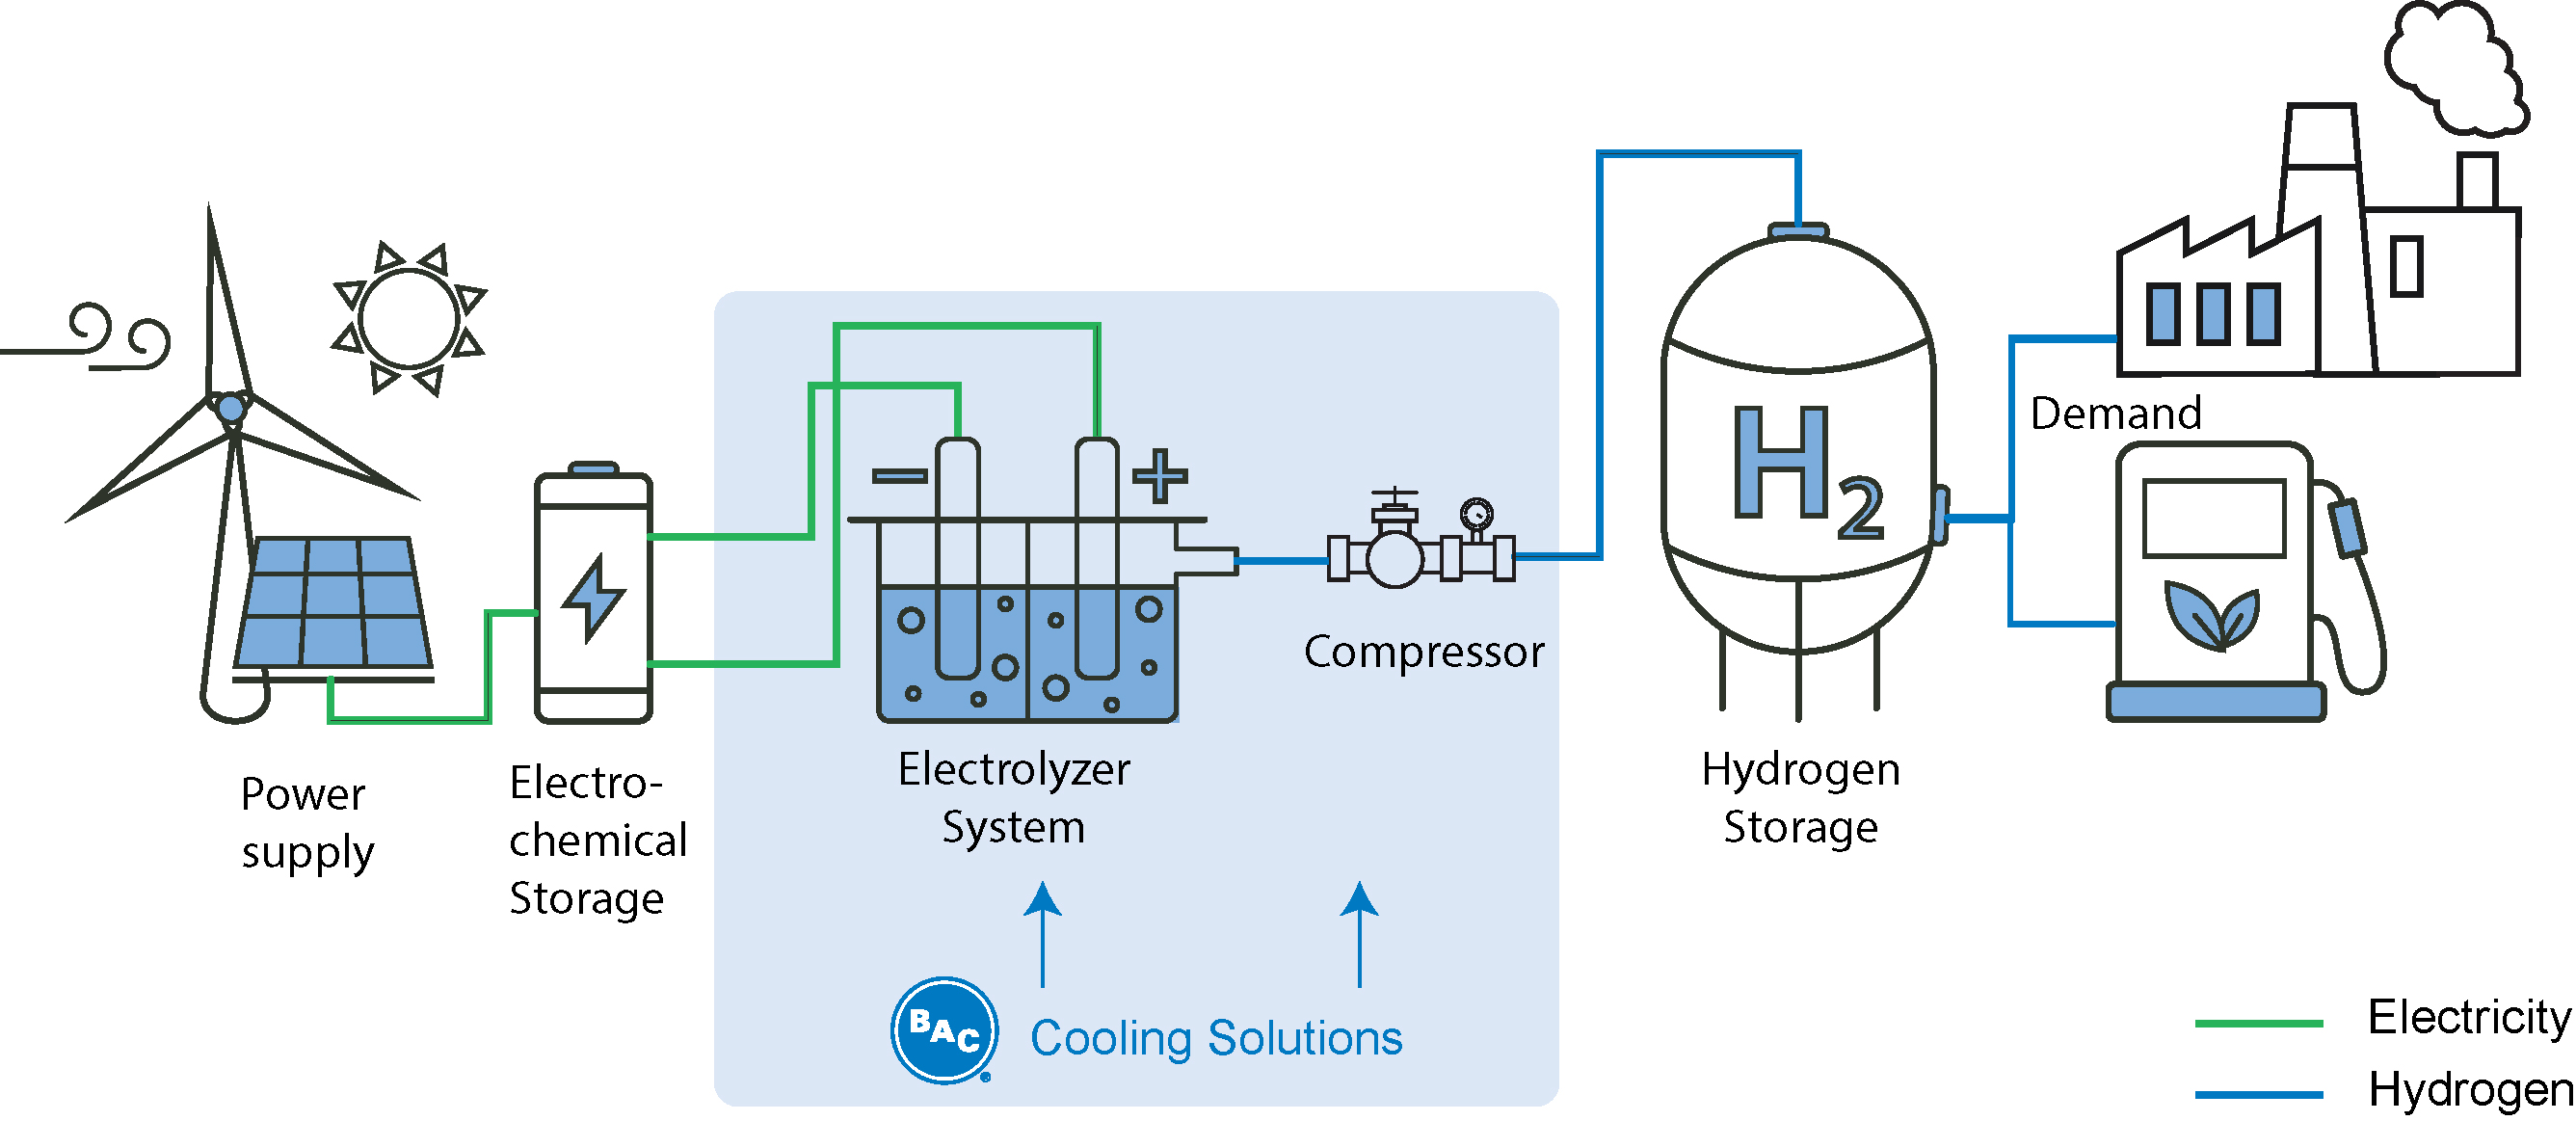 hydrogen_production_schematic_0.jpg